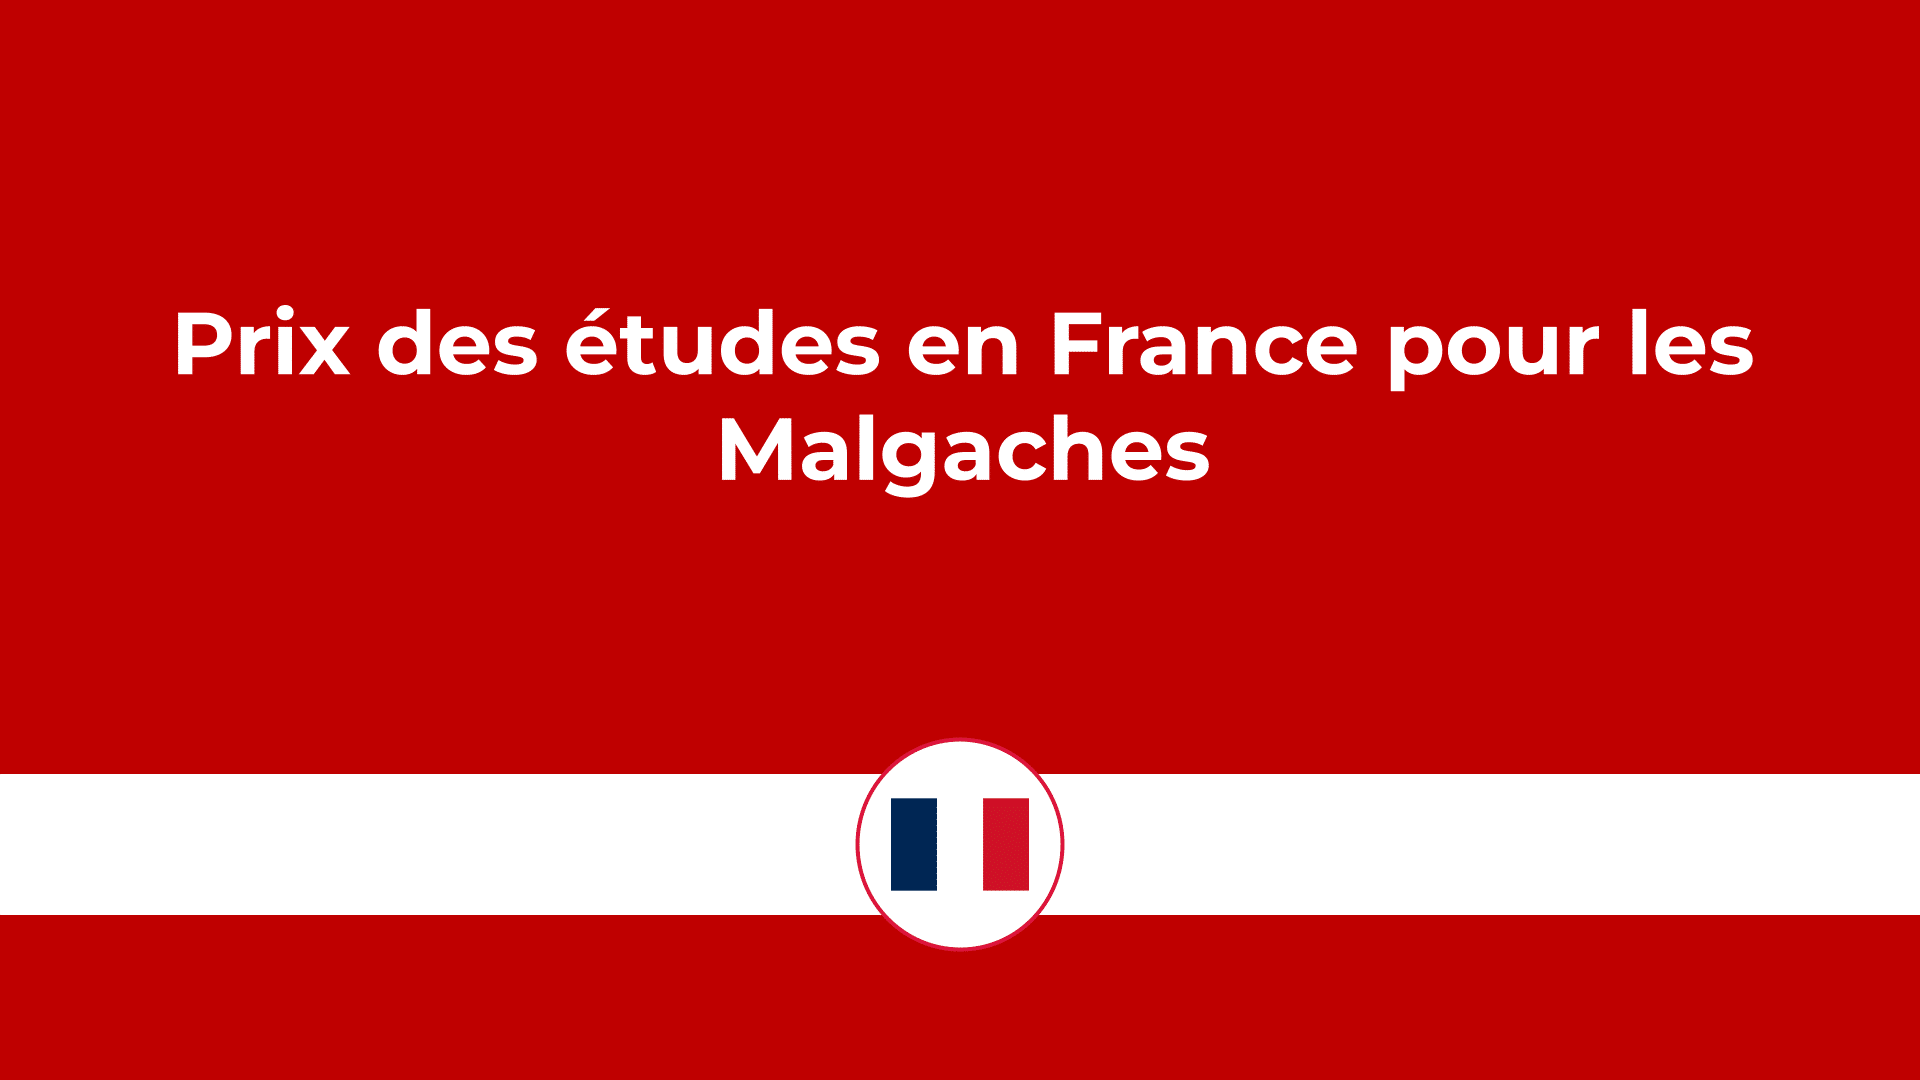 Prix des études en France pour les malgaches